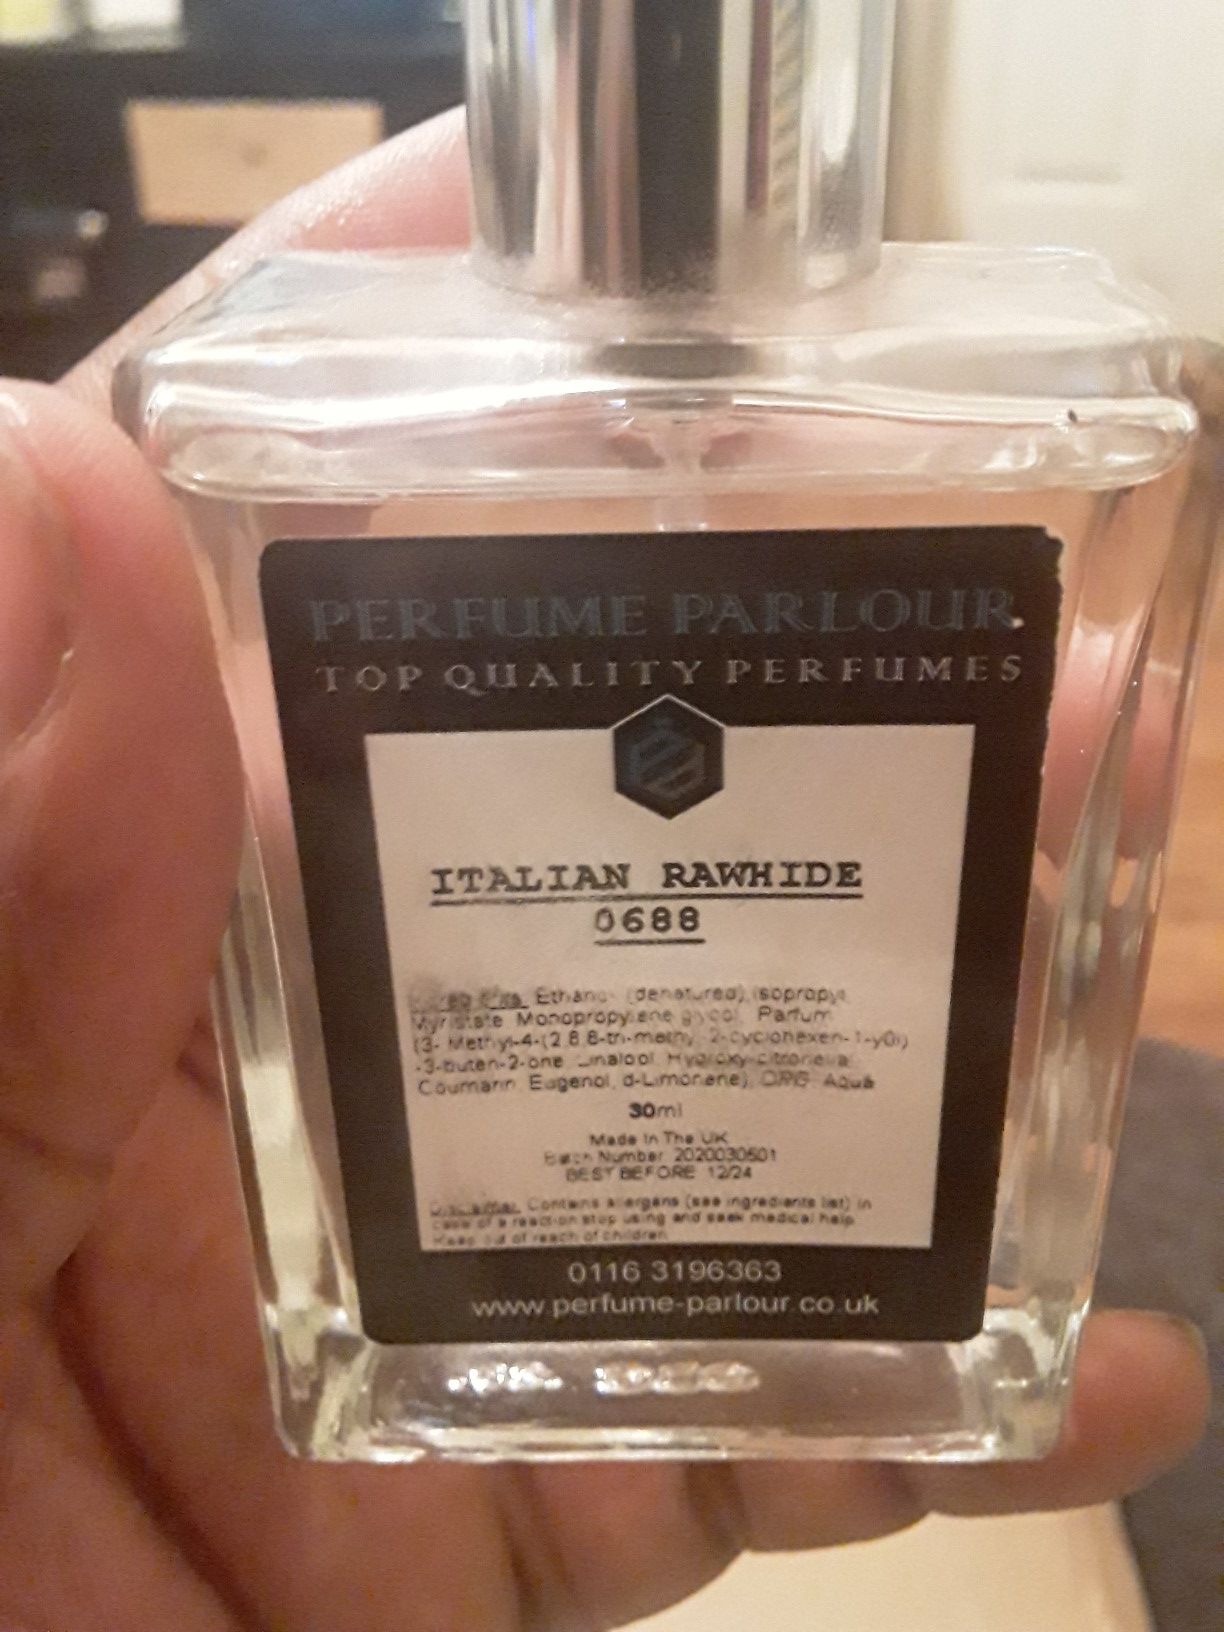 Perfume Parlour Italian Rawhide 0688